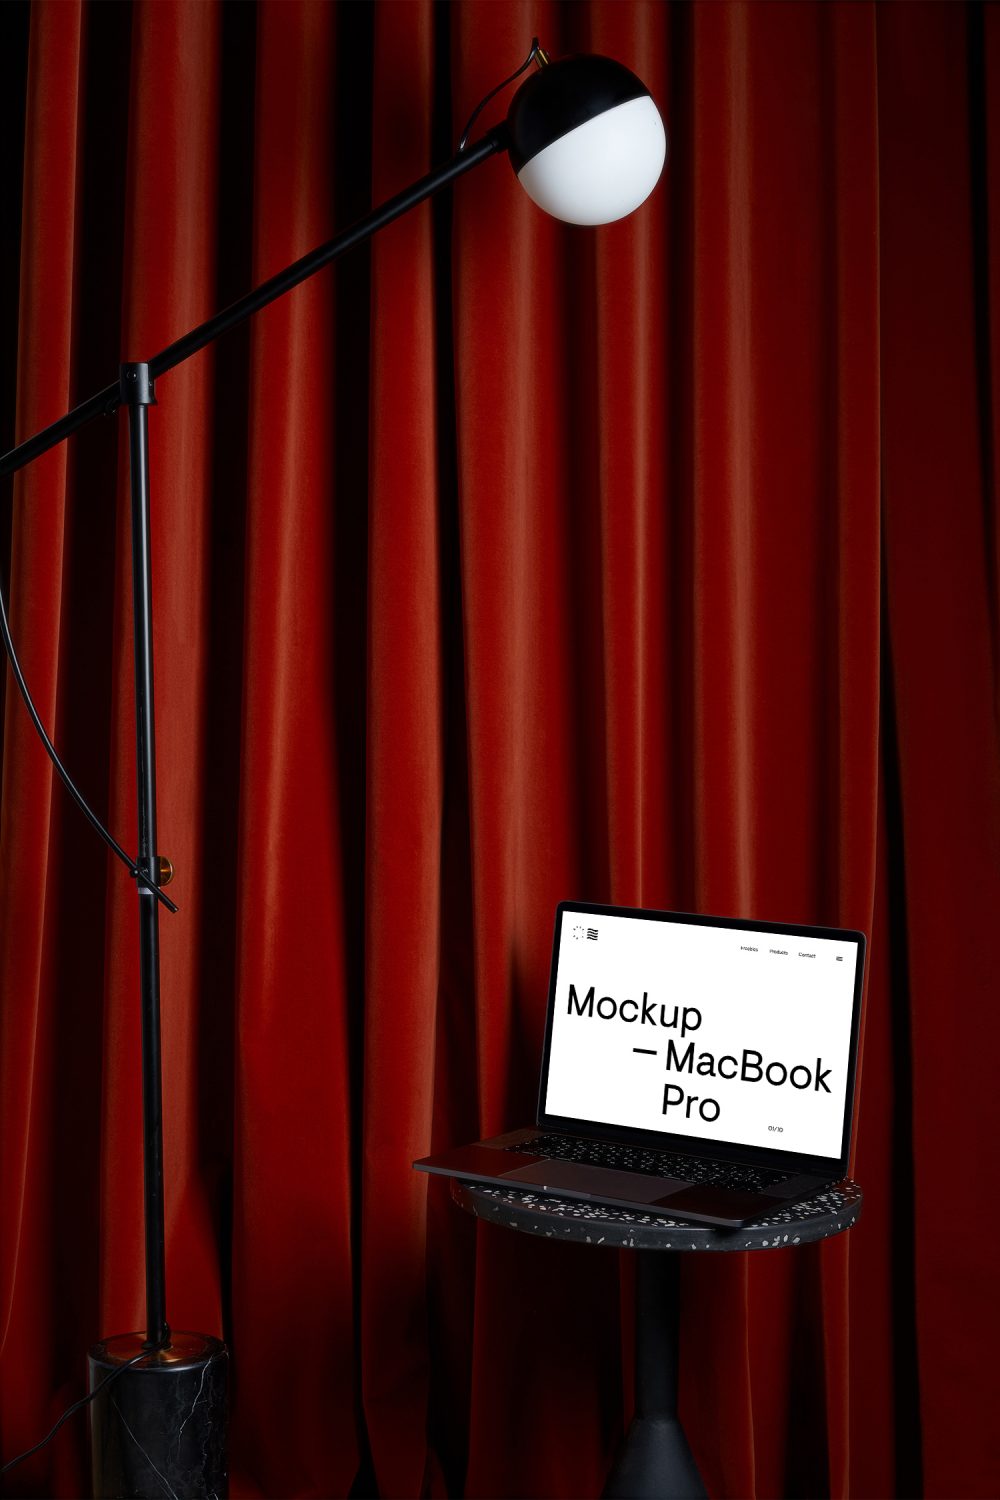 MacBook Pro Mockup на журнальном столике